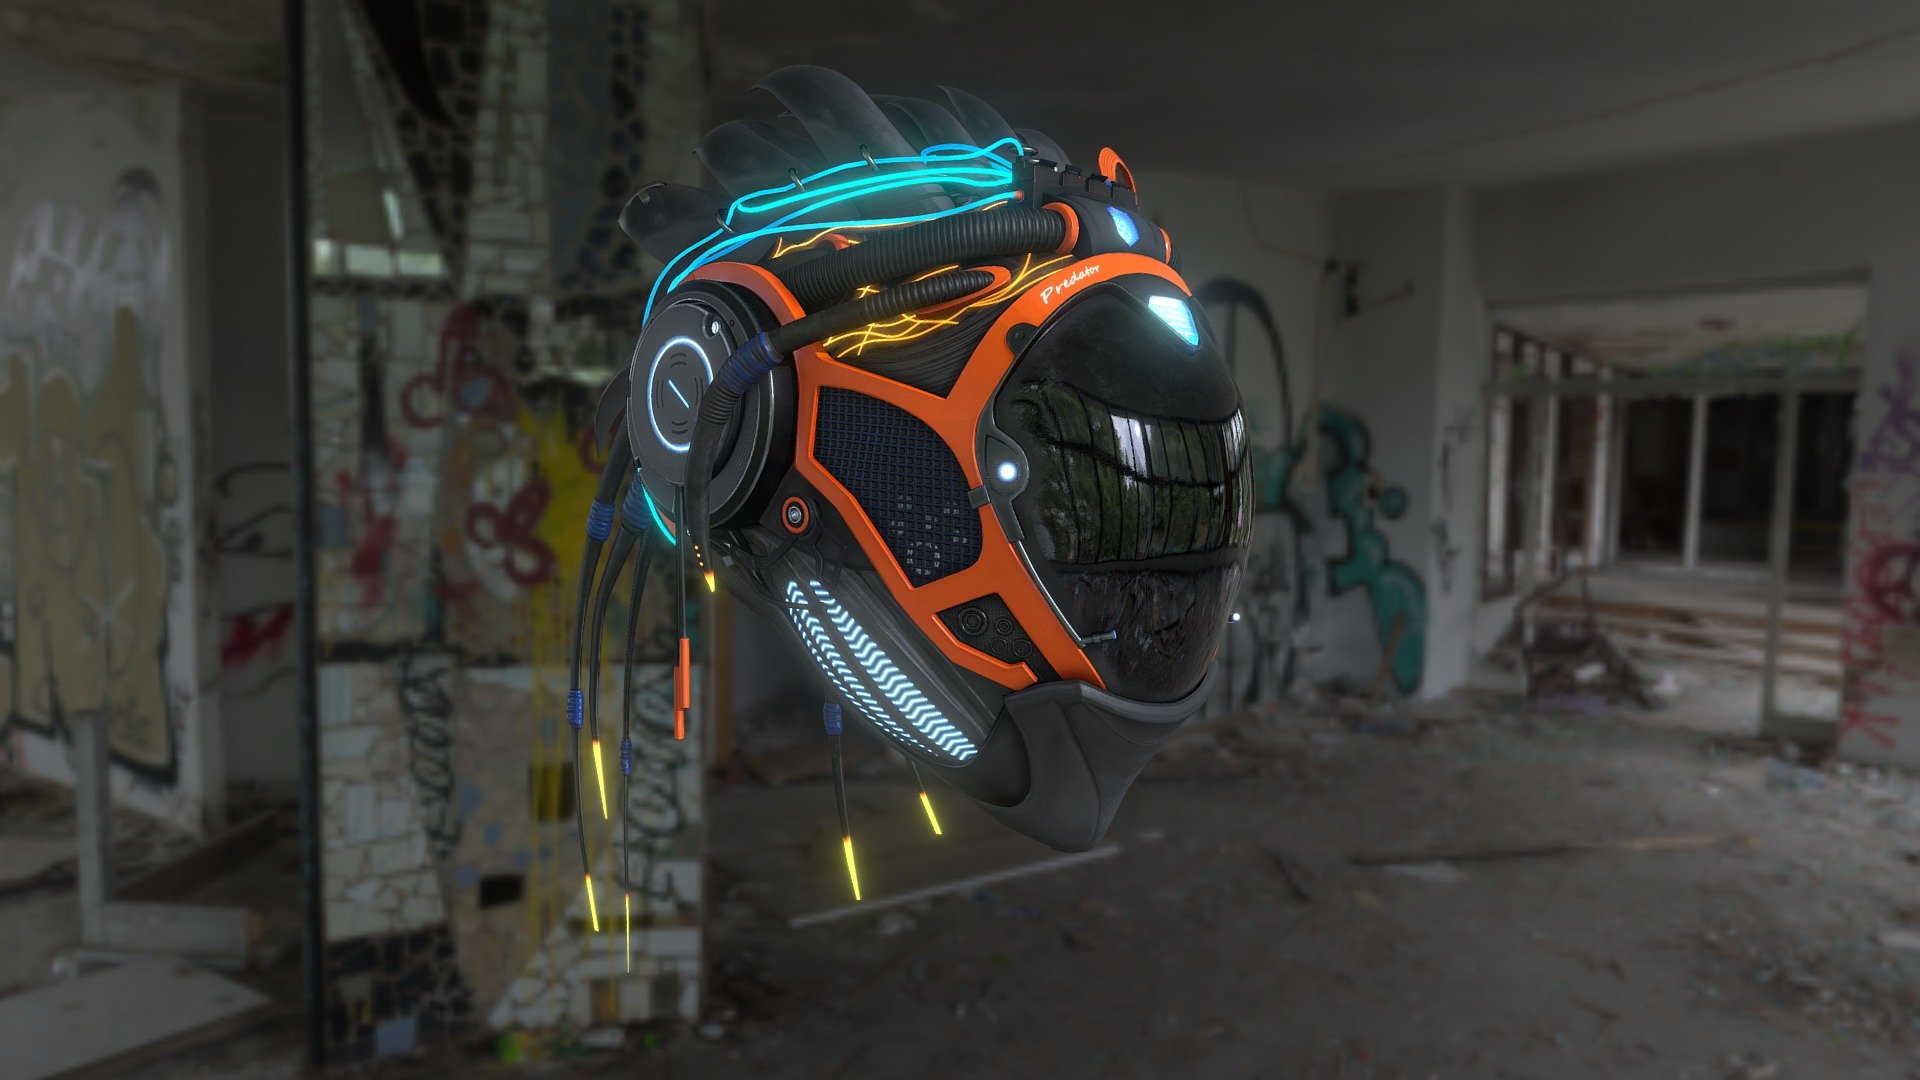 Inspired by Abrar Khan art - Helmet Predator X - 3D model by isoborova88 3d model